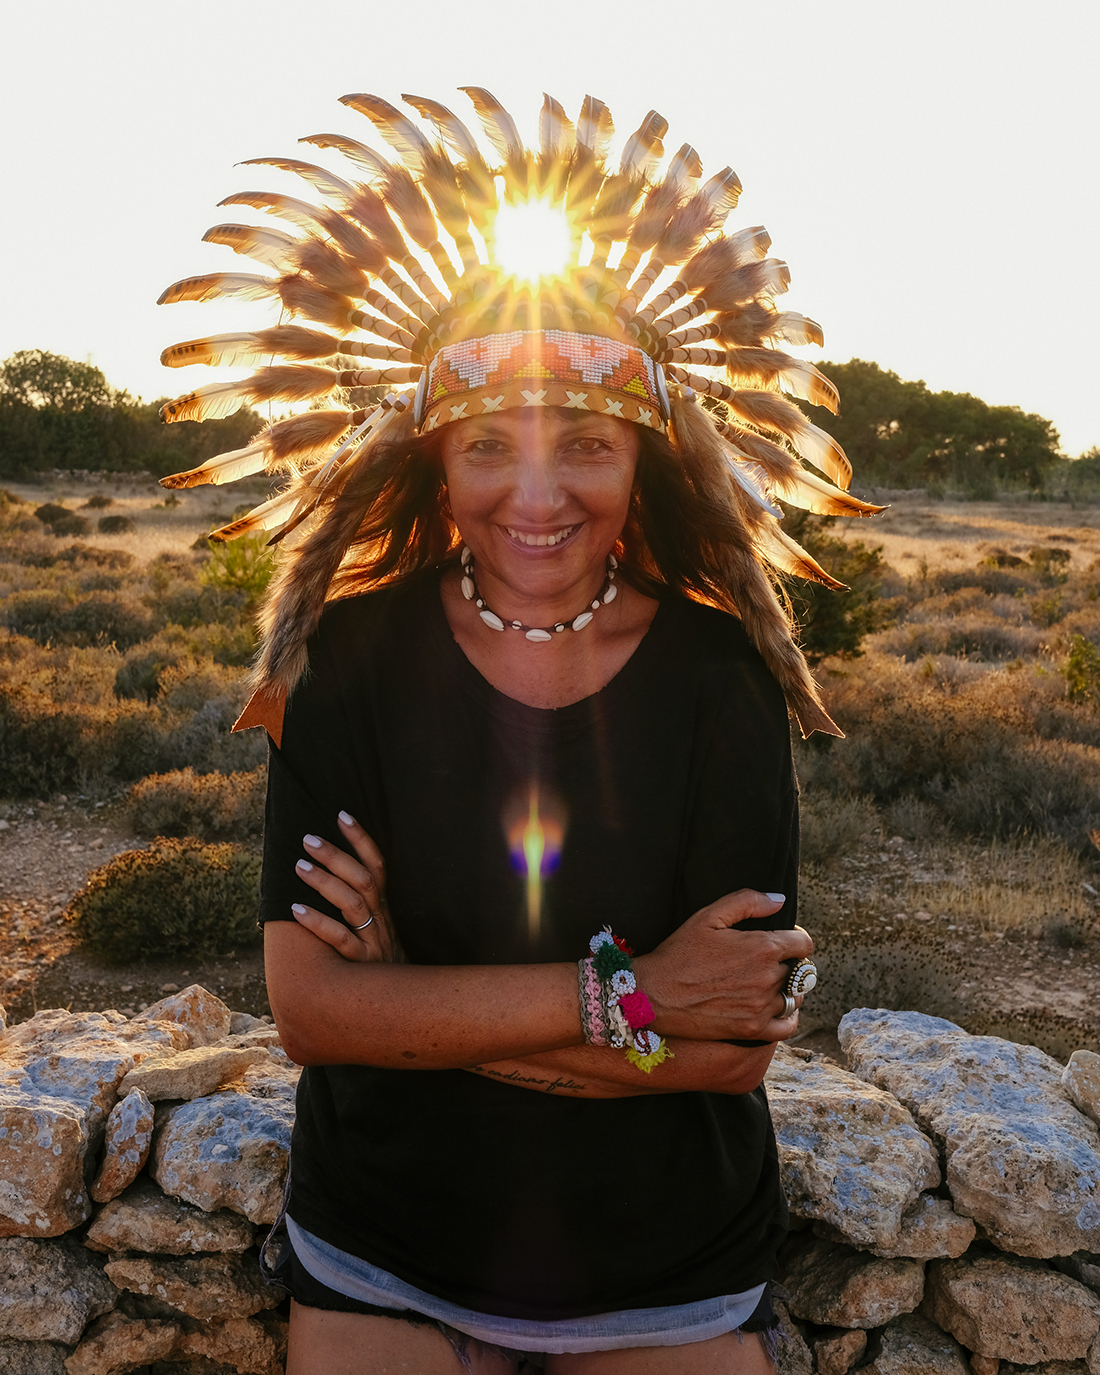 capo indiano, sole tramonto, Sandra Bacci